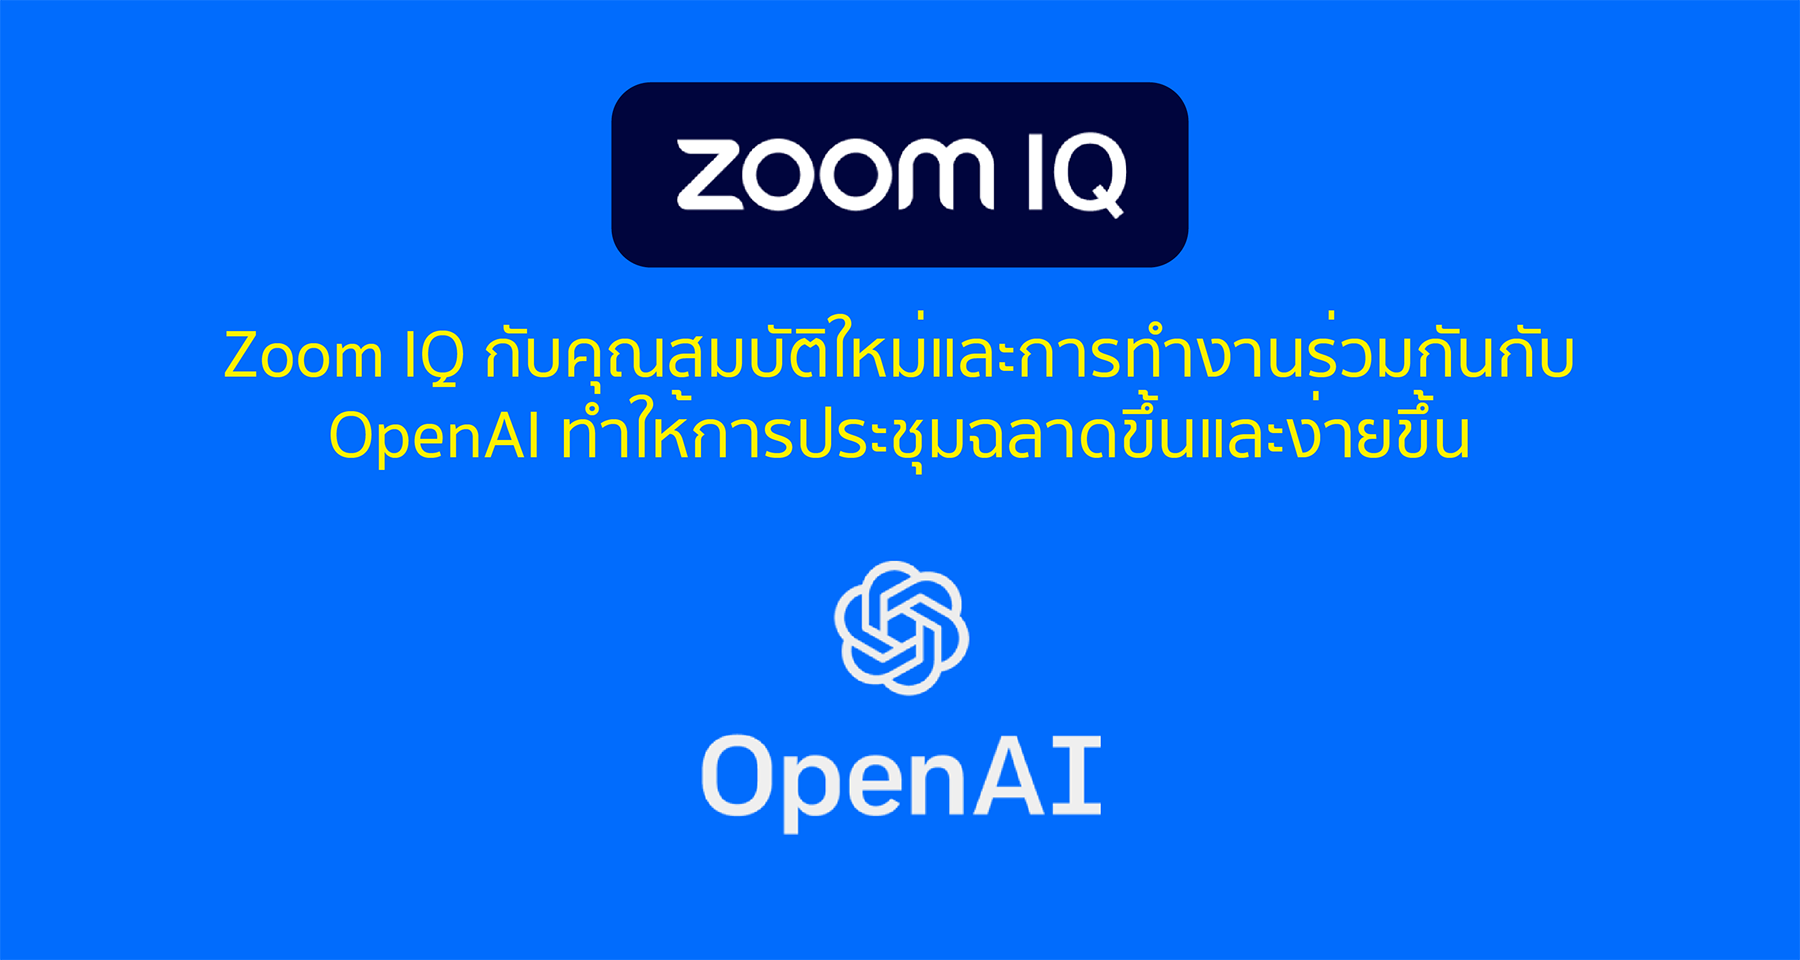 Zoom IQ กับคุณสมบัติใหม่และการทำงานร่วมกันกับ OpenAI ทำให้การประชุมฉลาดขึ้นและง่ายขึ้น